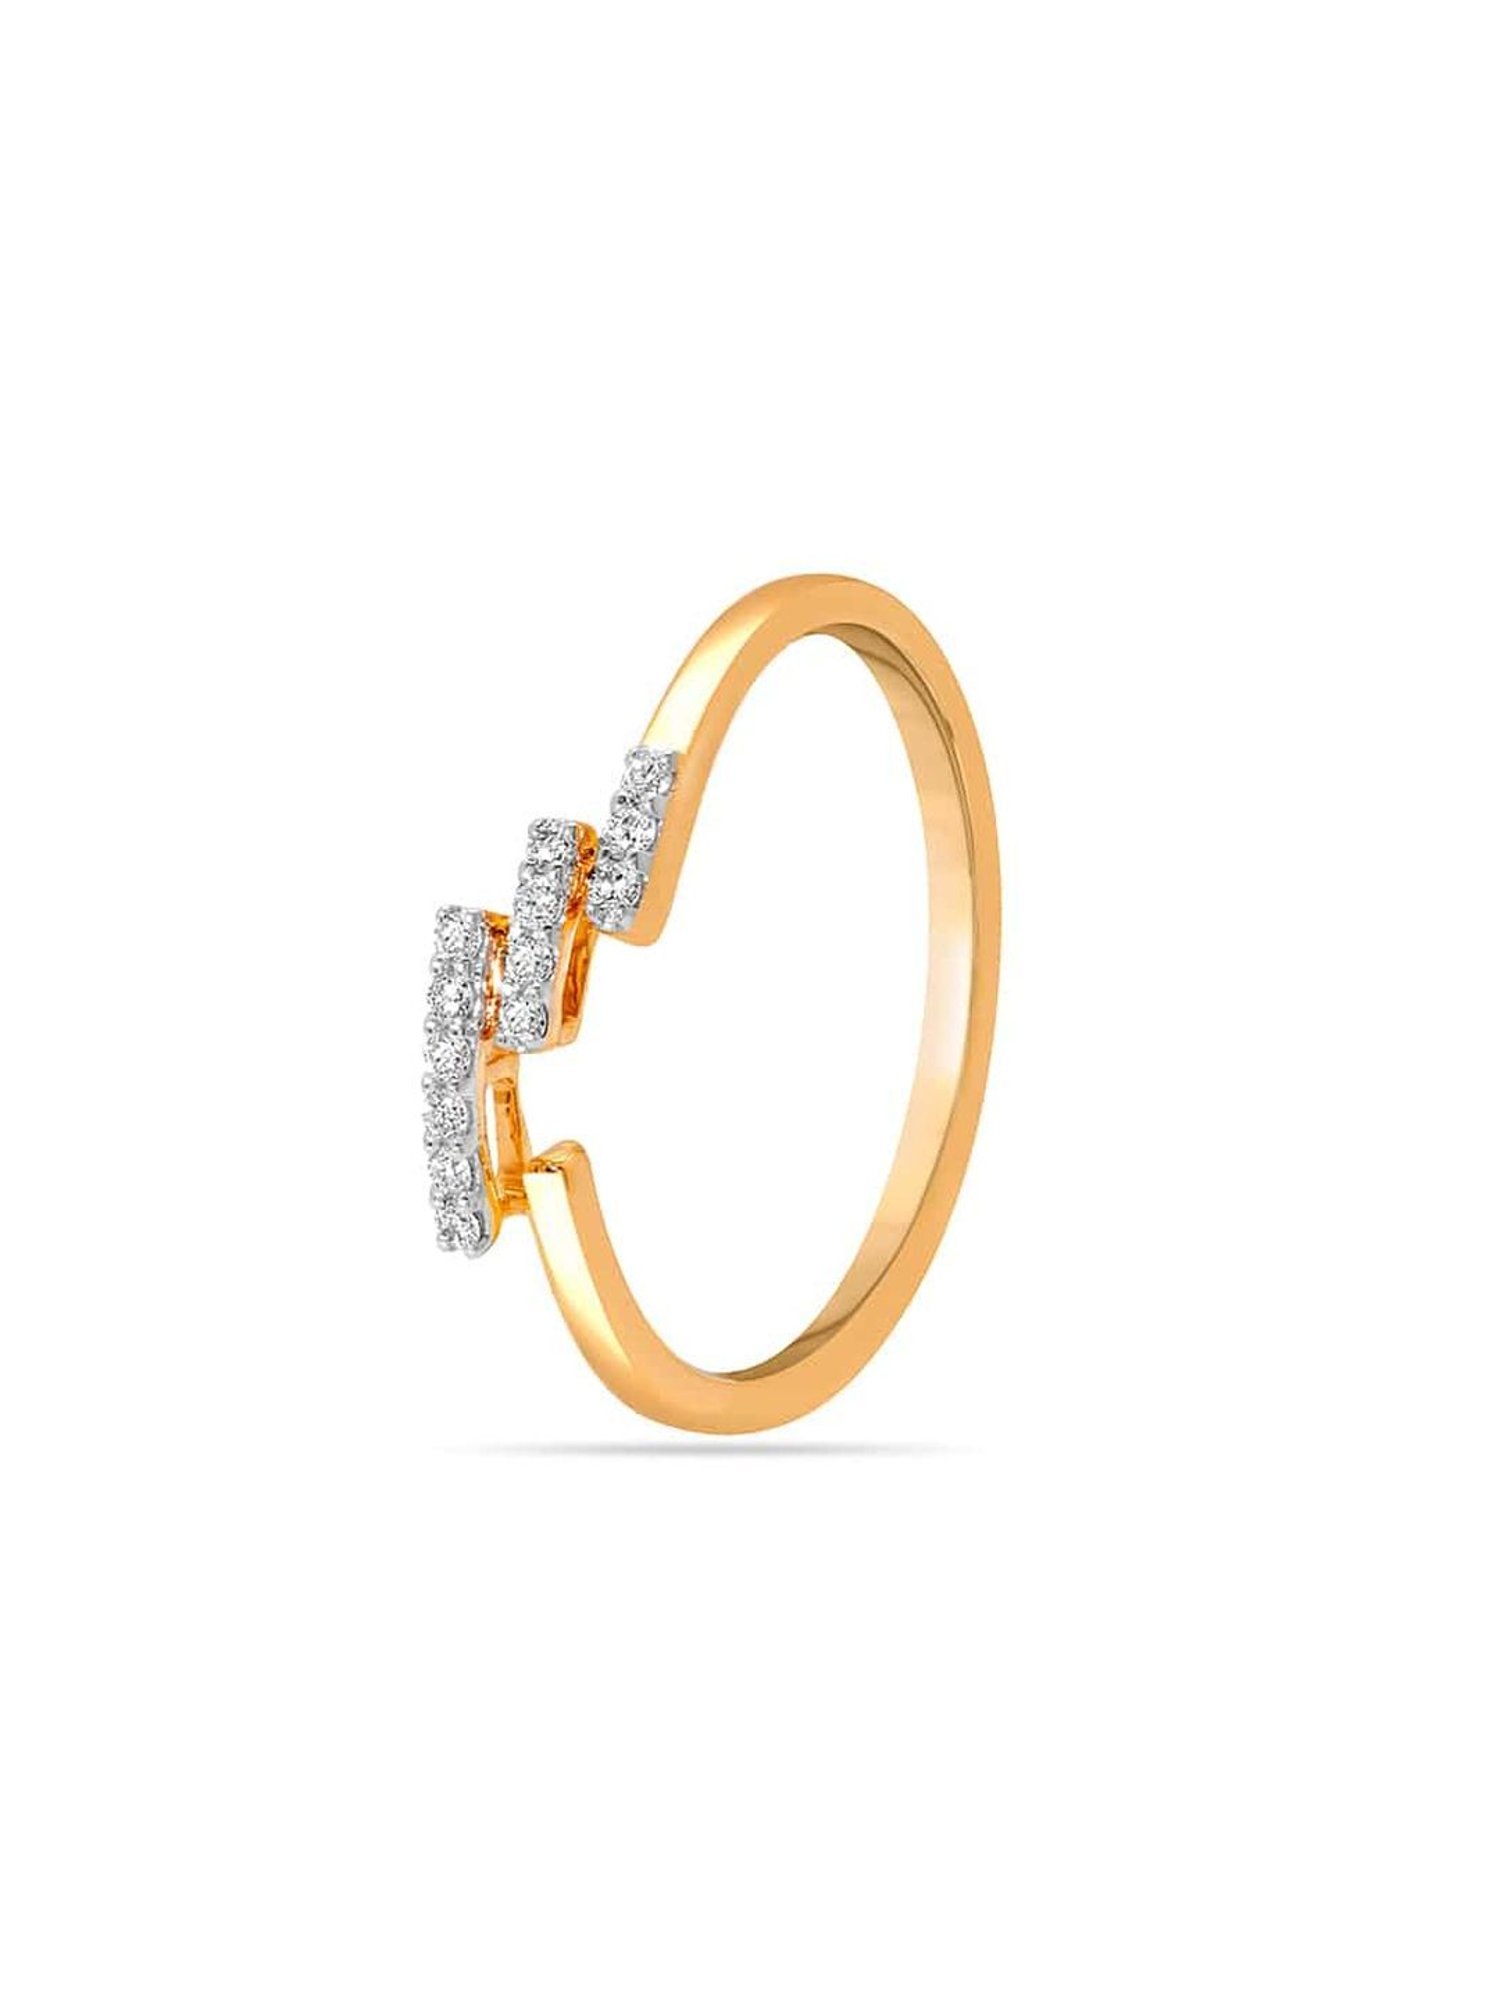 Fabulous Gold and Diamond Finger Ring for men